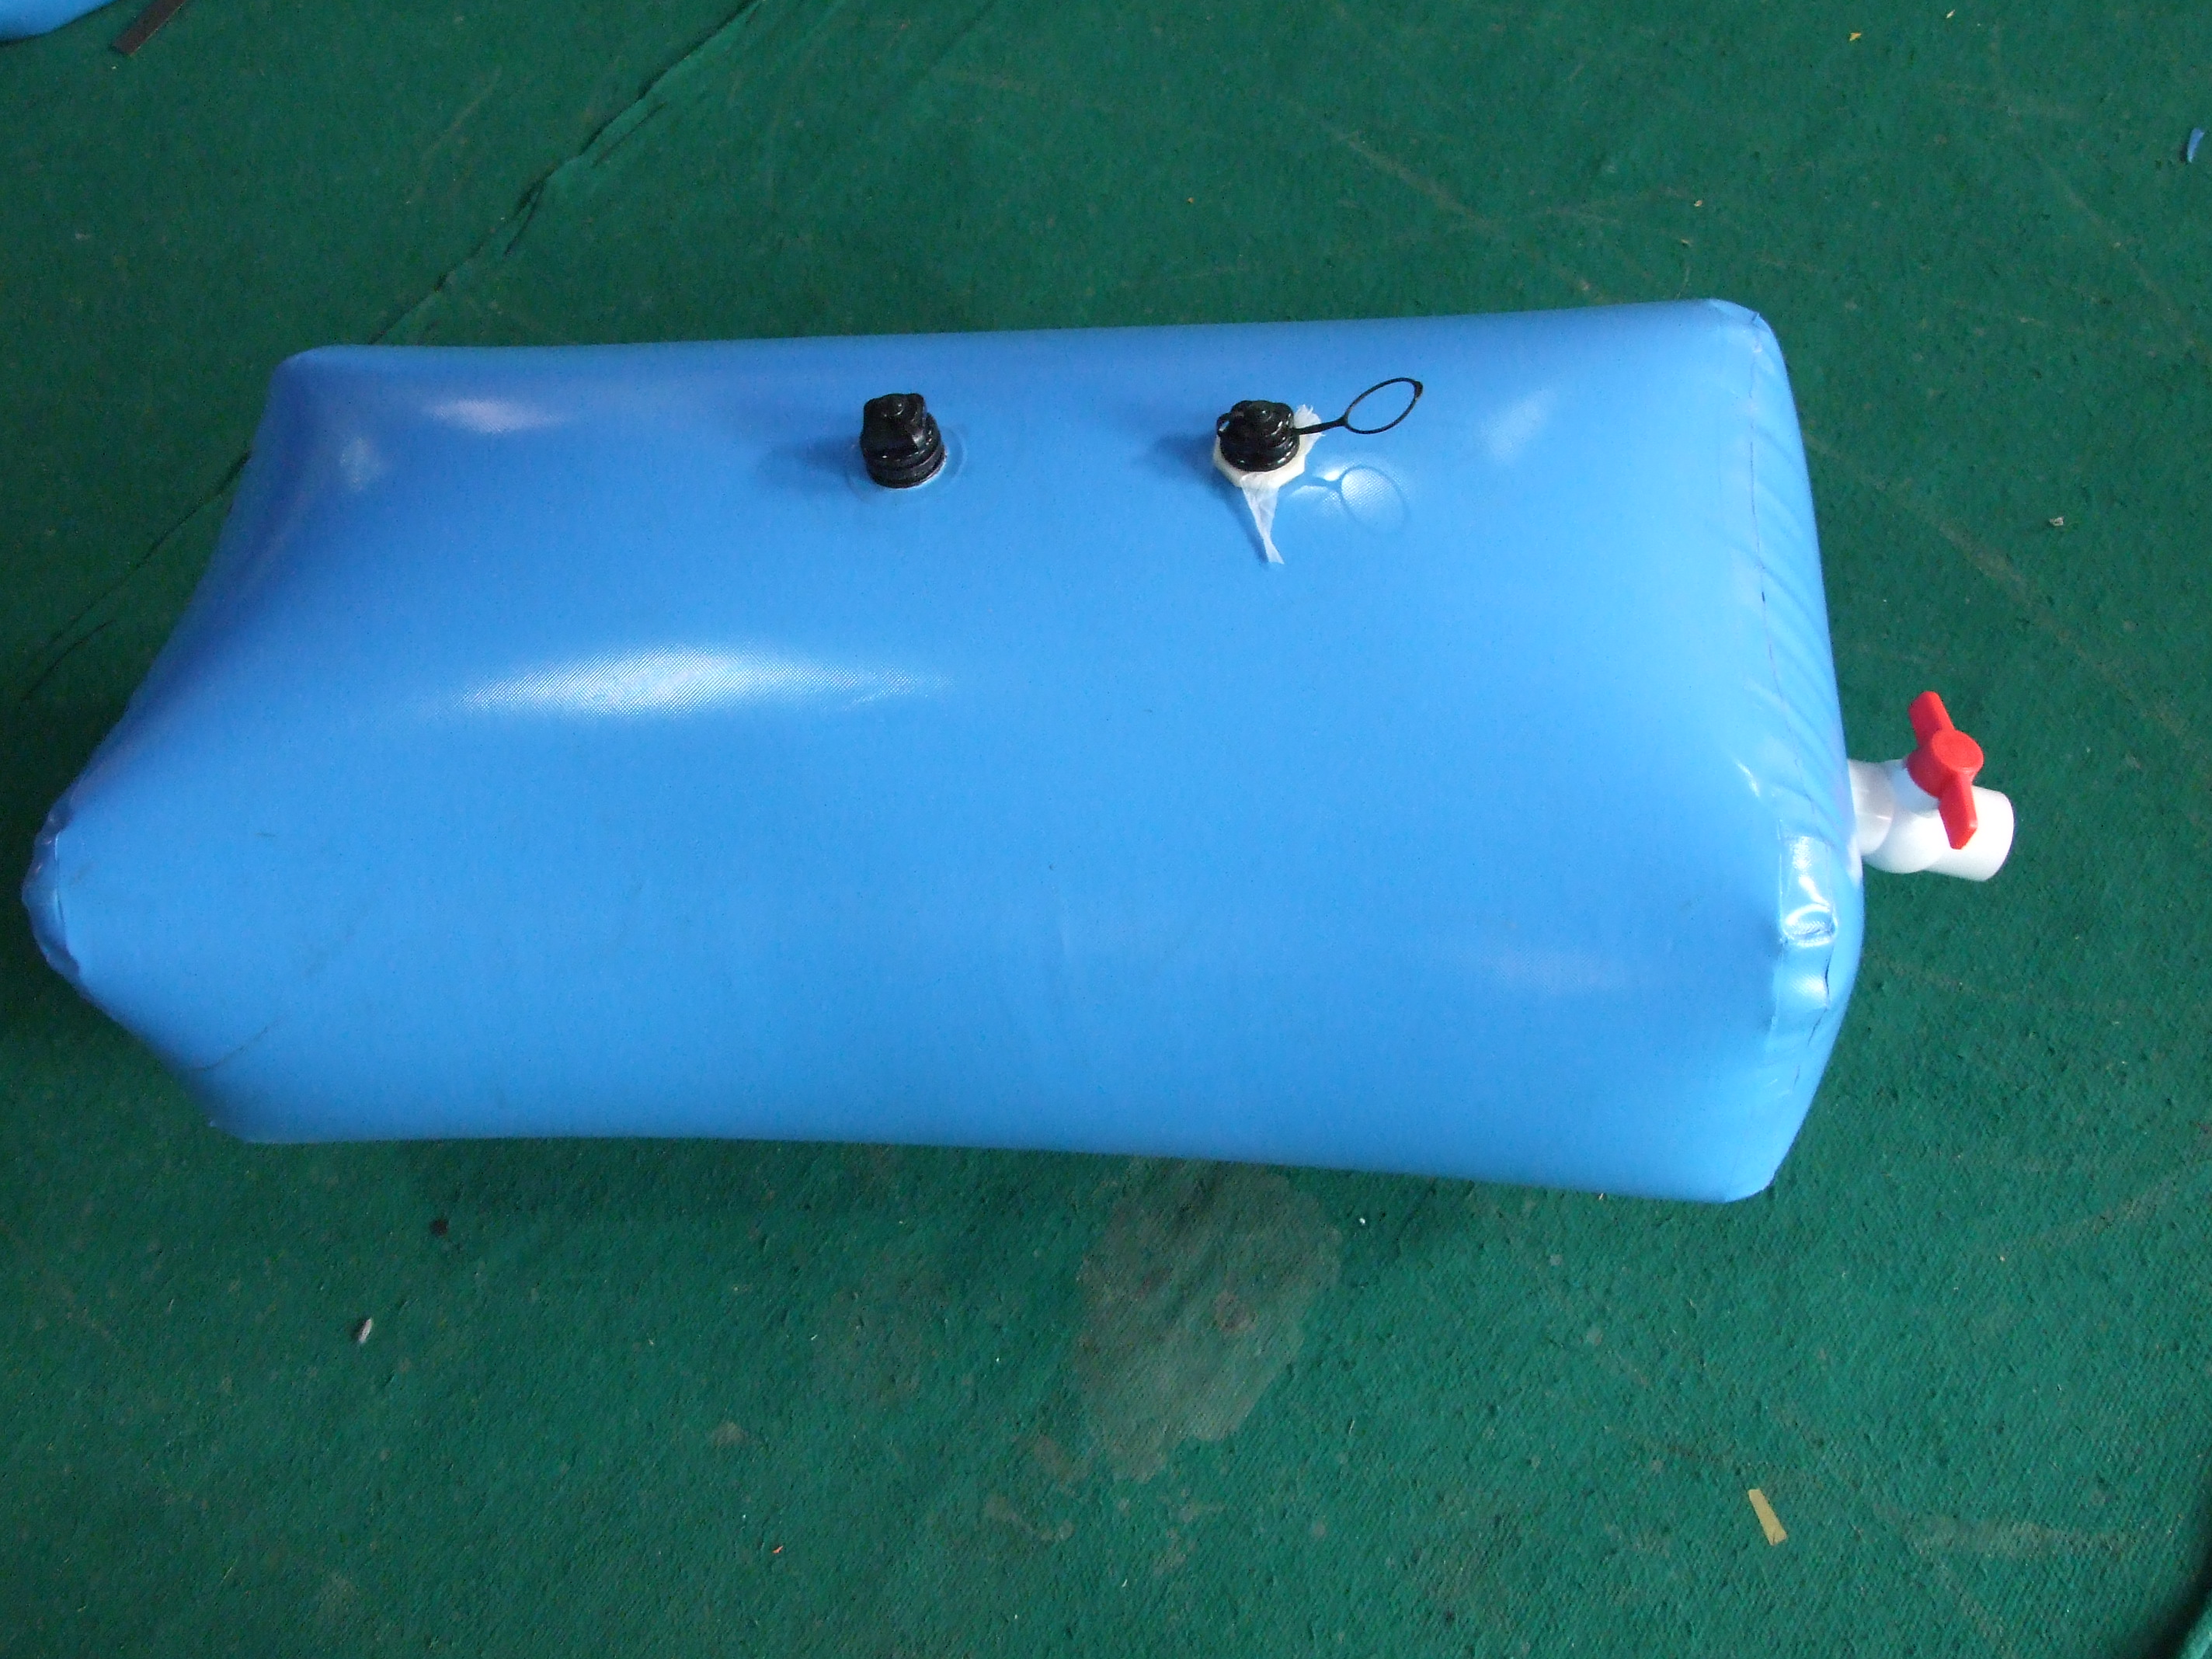 Bulk Of Folding PVC Tarpaulin Material Made Rainwater Catchment Tank Portable Rain Water Tank